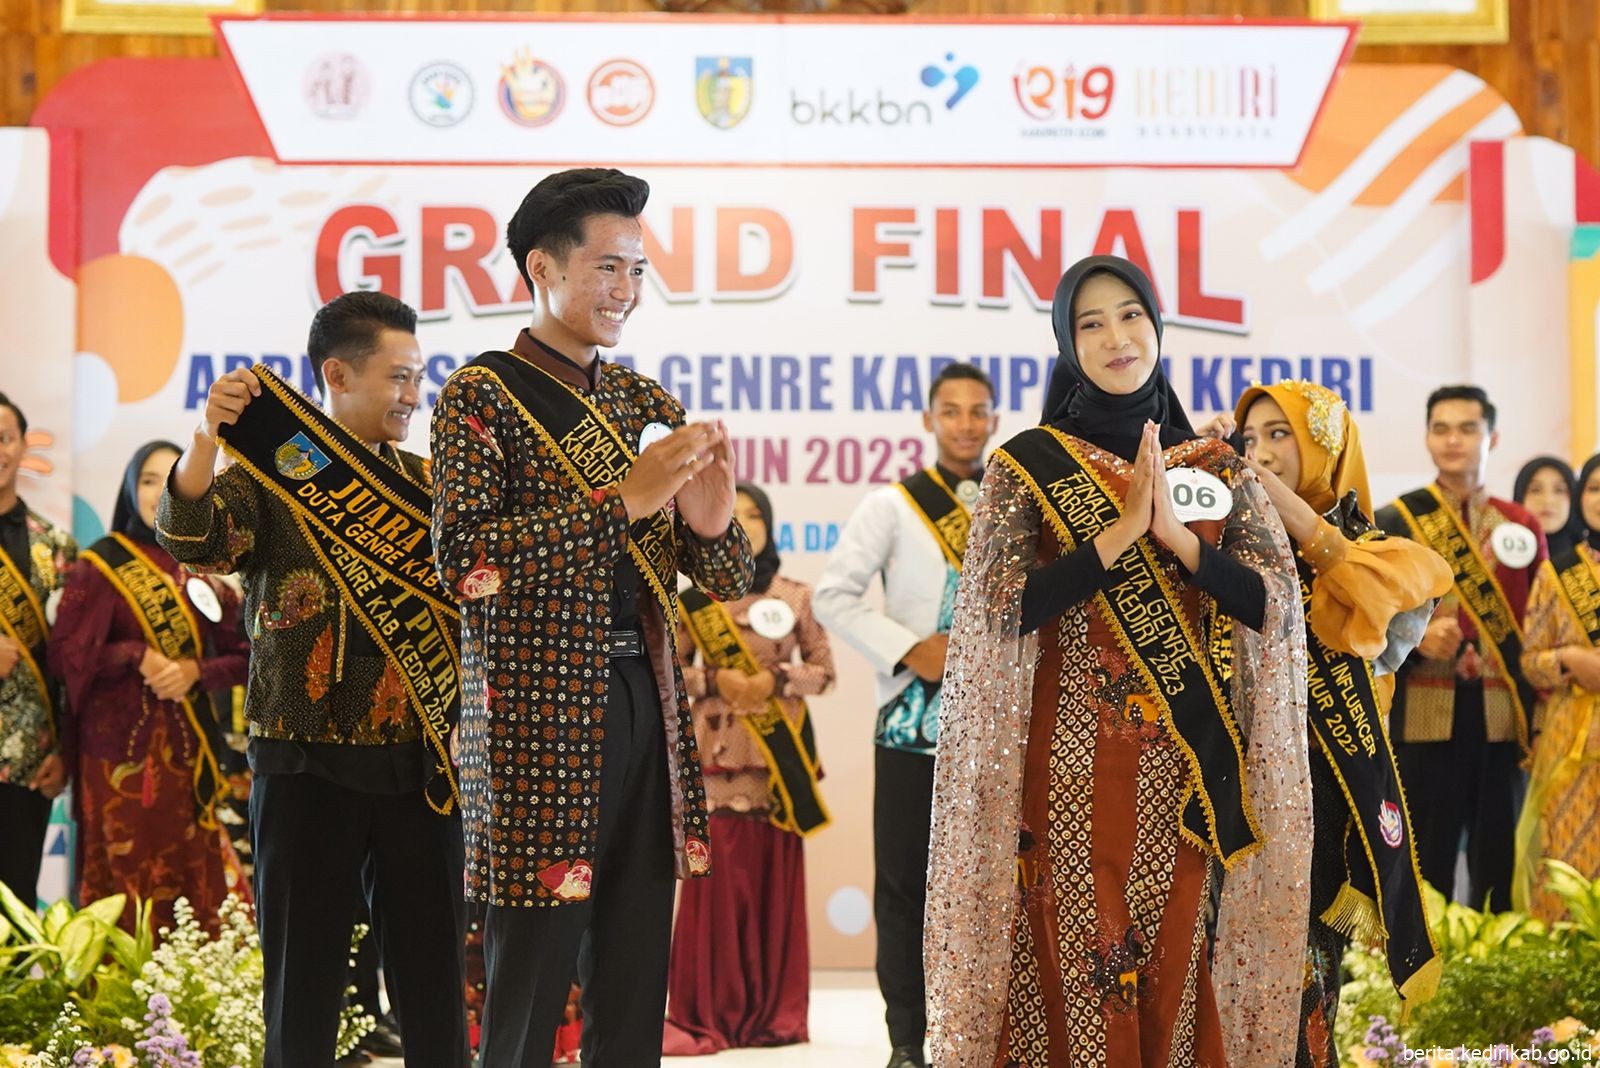 Grand Final Duta Genre tahun 2023, Remaja Terencana Tunda Nikah Muda dalam Upaya Pencegahan Stunting